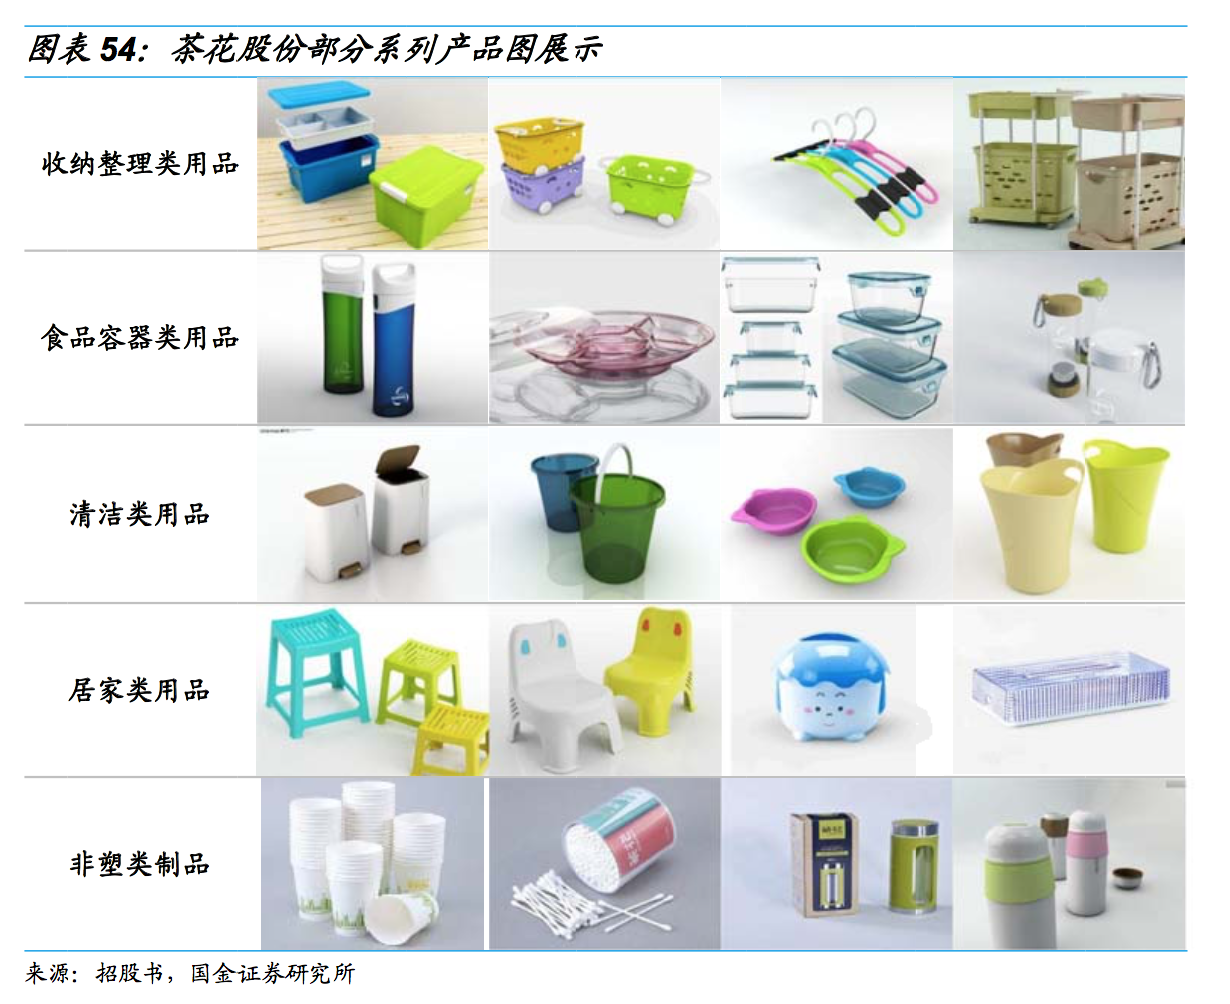 茶花股份:国内塑料家居龙头,IPO 全面提升竞争优势